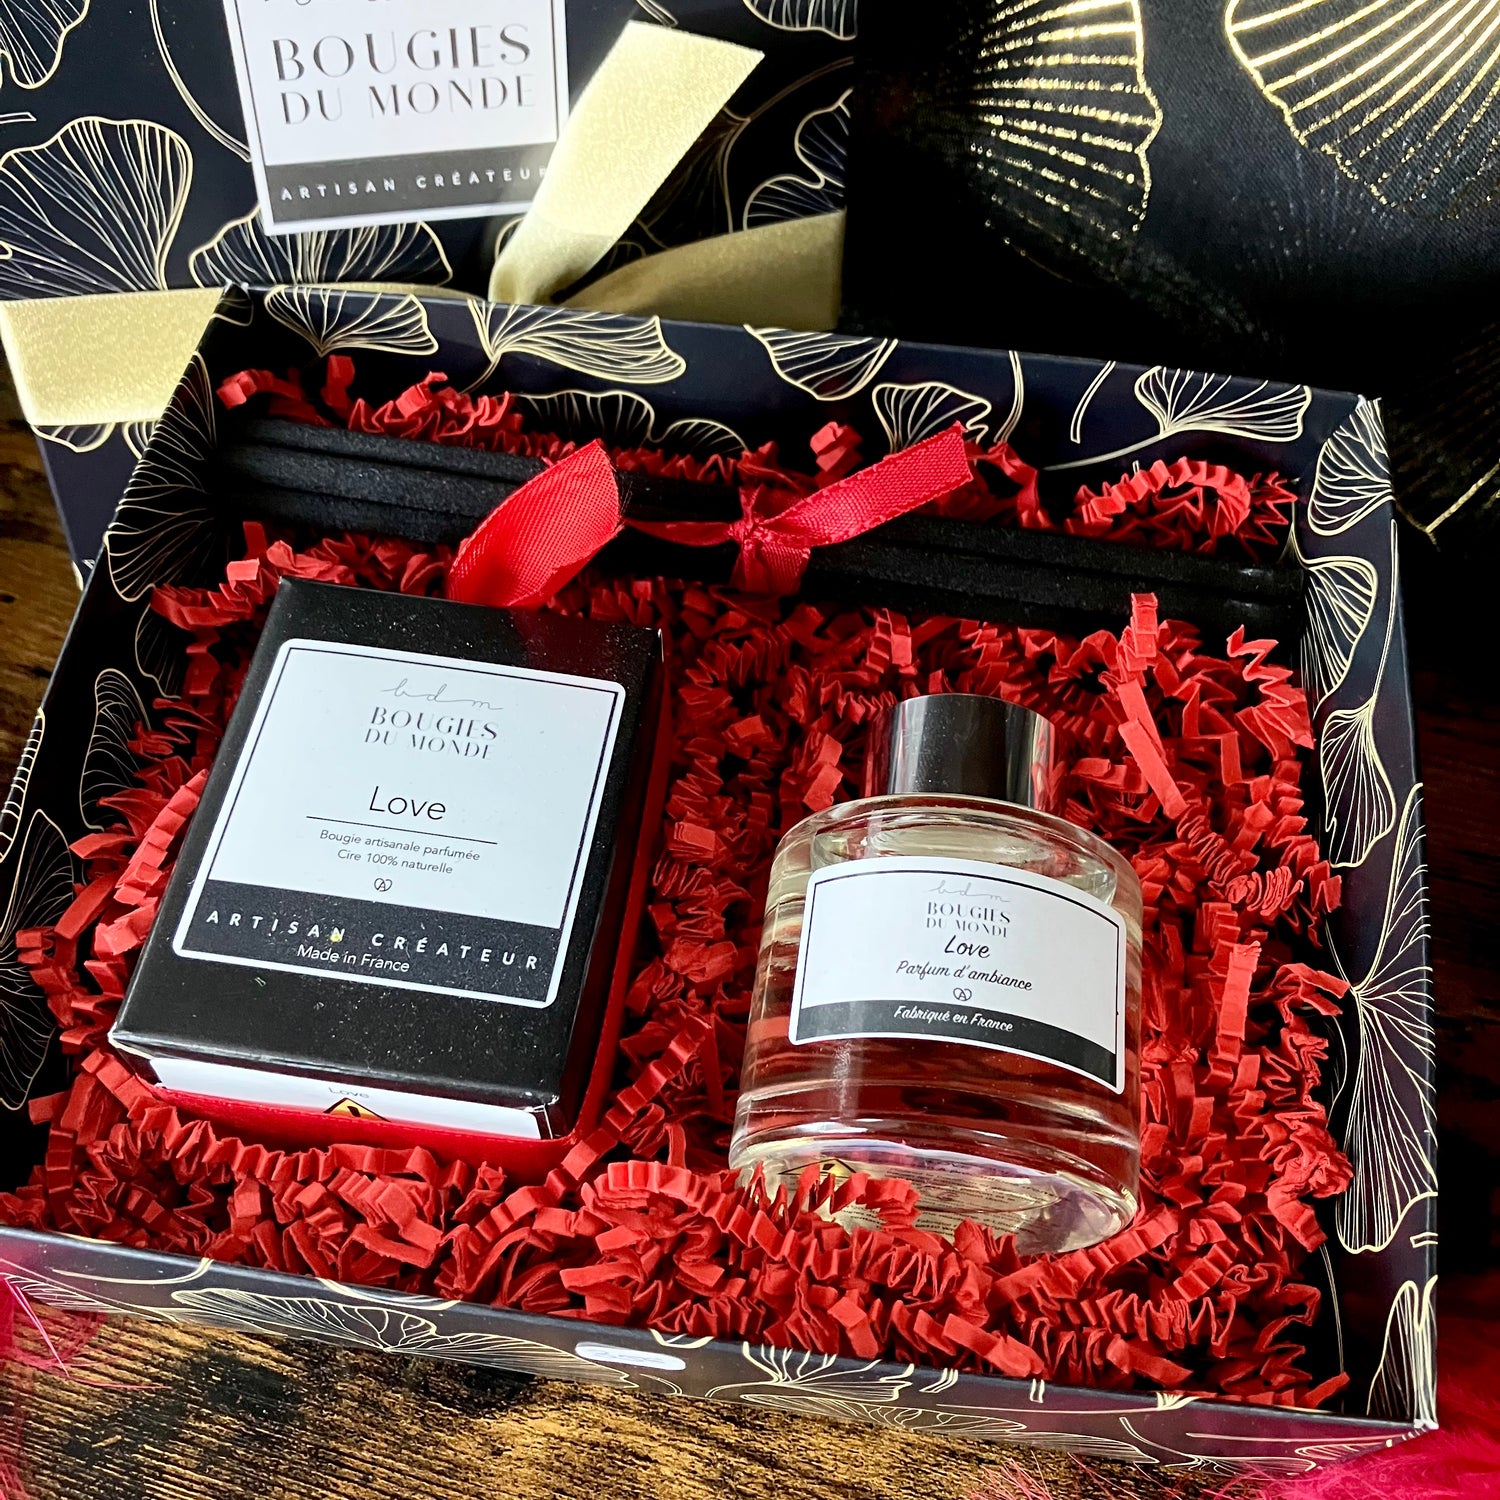 Achat Coffret Cadeau d Ambiance Chic / Diffuseur de parfum + Douceur Linge  + Bougie Végétale en gros